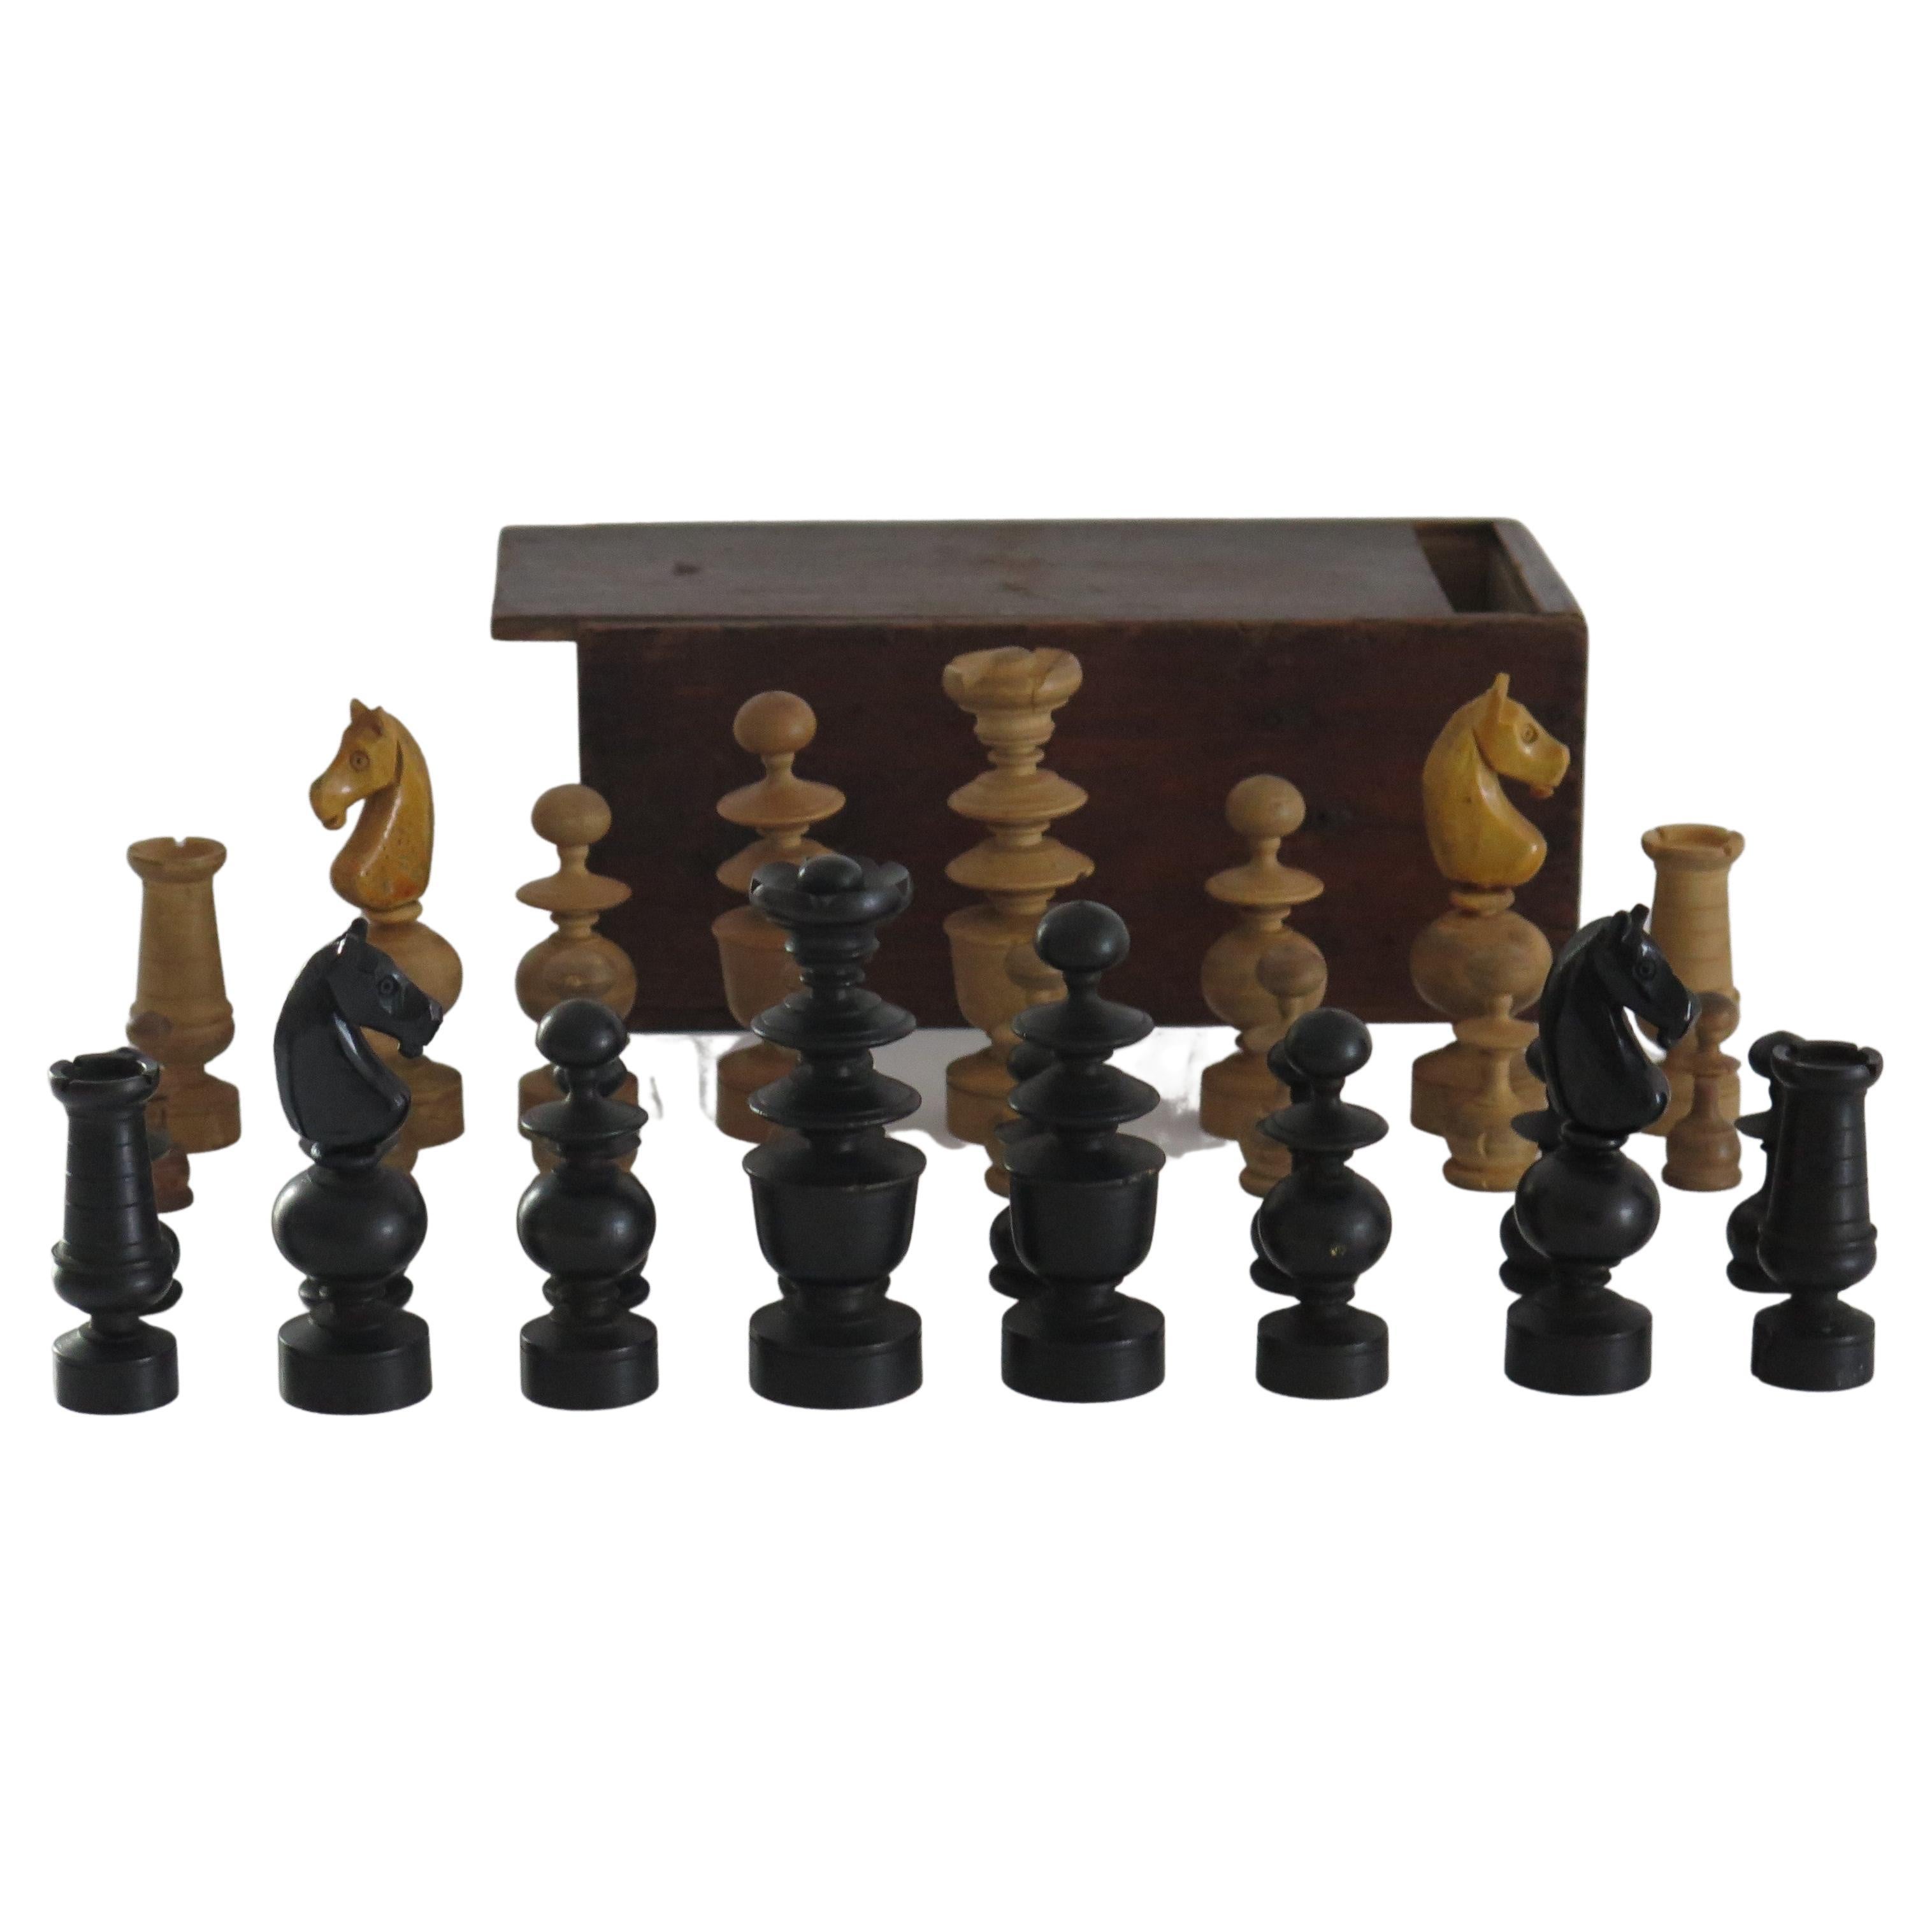 Il s'agit d'un très bon et complet jeu d'échecs en bois dur, fait à la main, de 32 pièces dans une boîte en pin faite à la main avec un couvercle coulissant, que nous datons du tournant du 19ème siècle, Circa 1900.

Le jeu d'échecs est complet avec